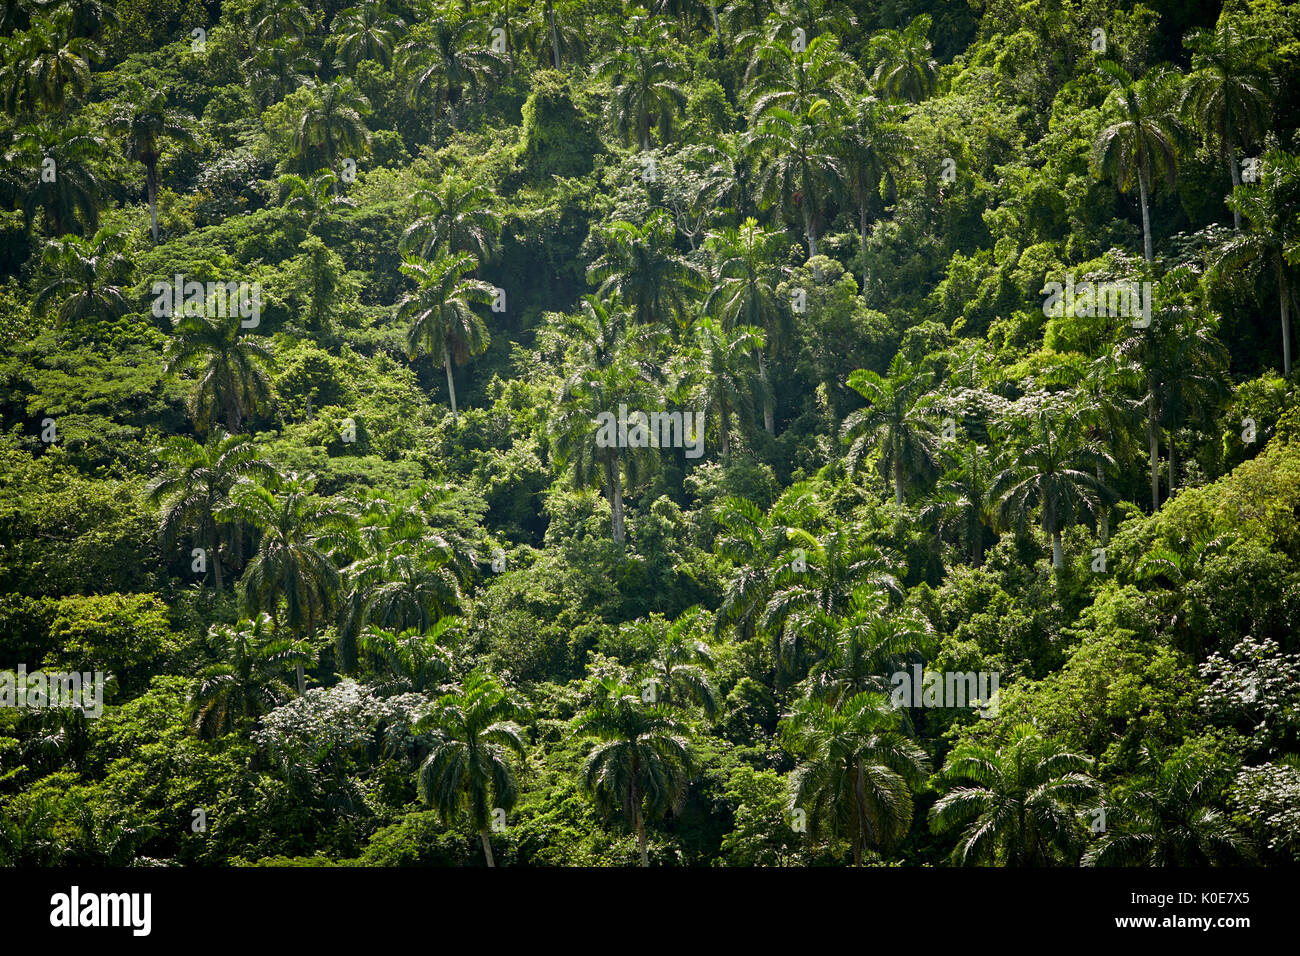 Kuba Roystonea regia, allgemein bekannt als die kubanischen Royal Palm in einem Wald im Tal in der Nähe von Bacunayagua Matanzas, einer karibischen Insel Nation unter communis Stockfoto